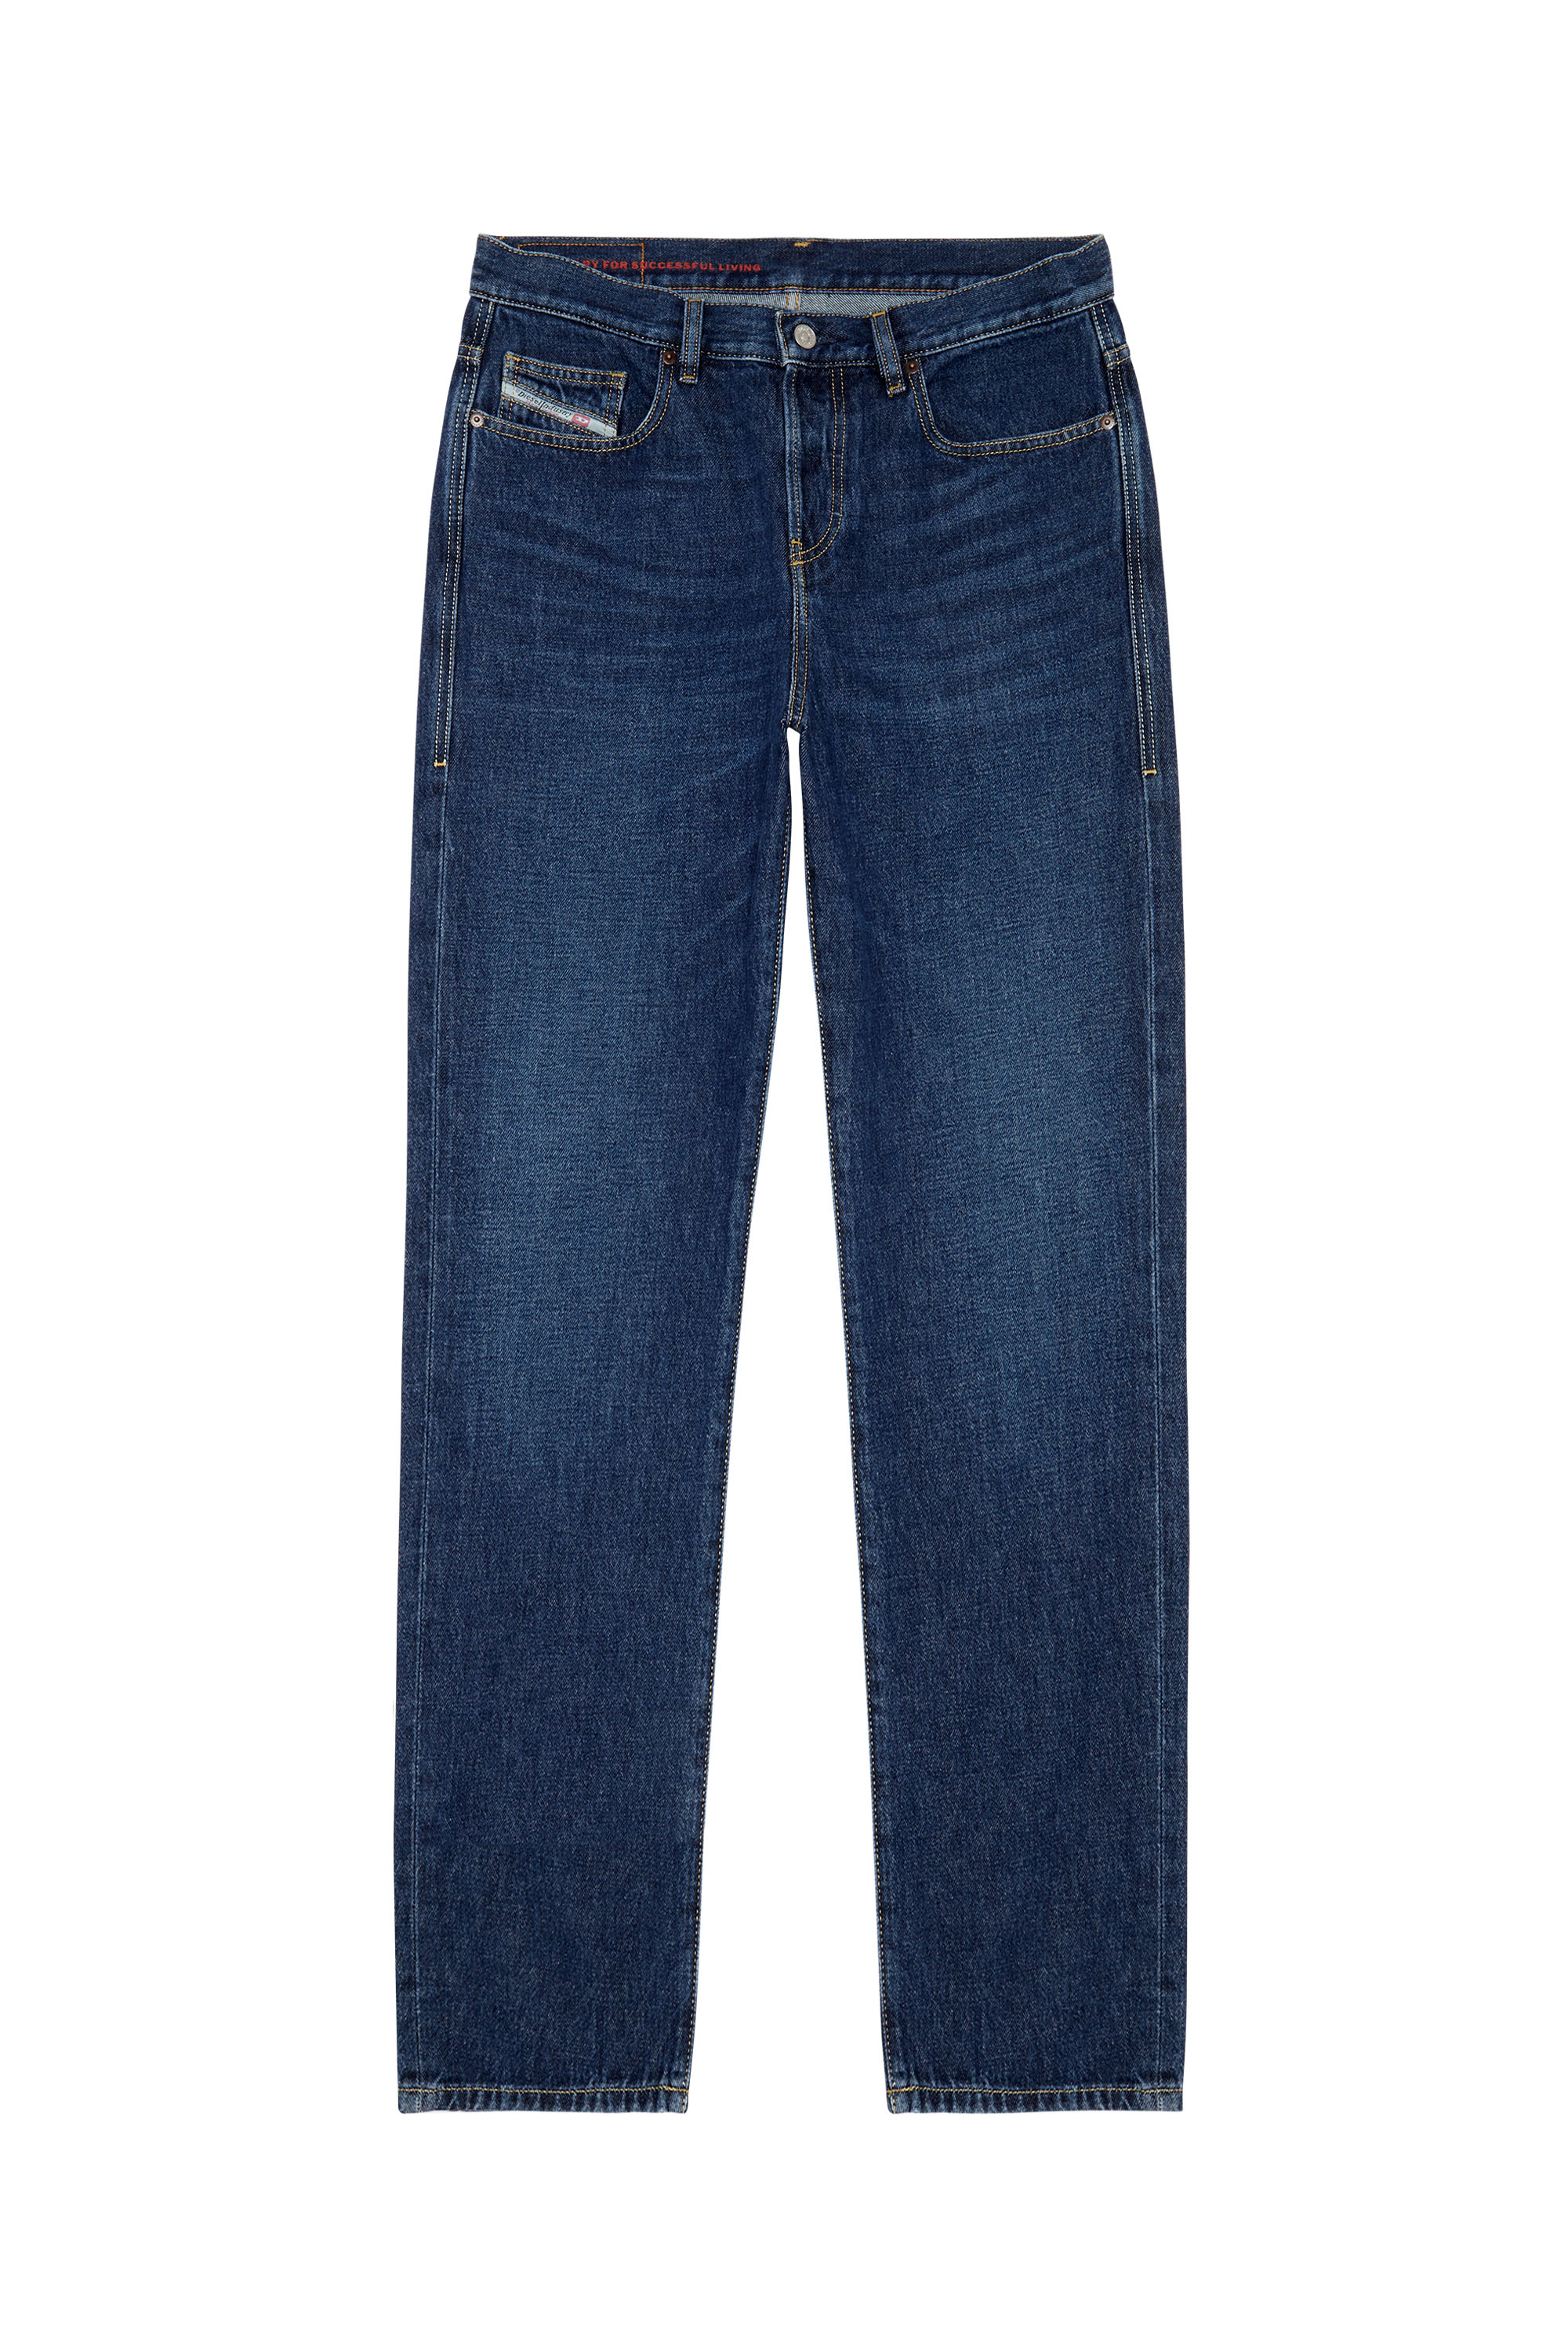 Straight Jeans 2020 D-Viker 09C03, Bleu Foncé - Jeans